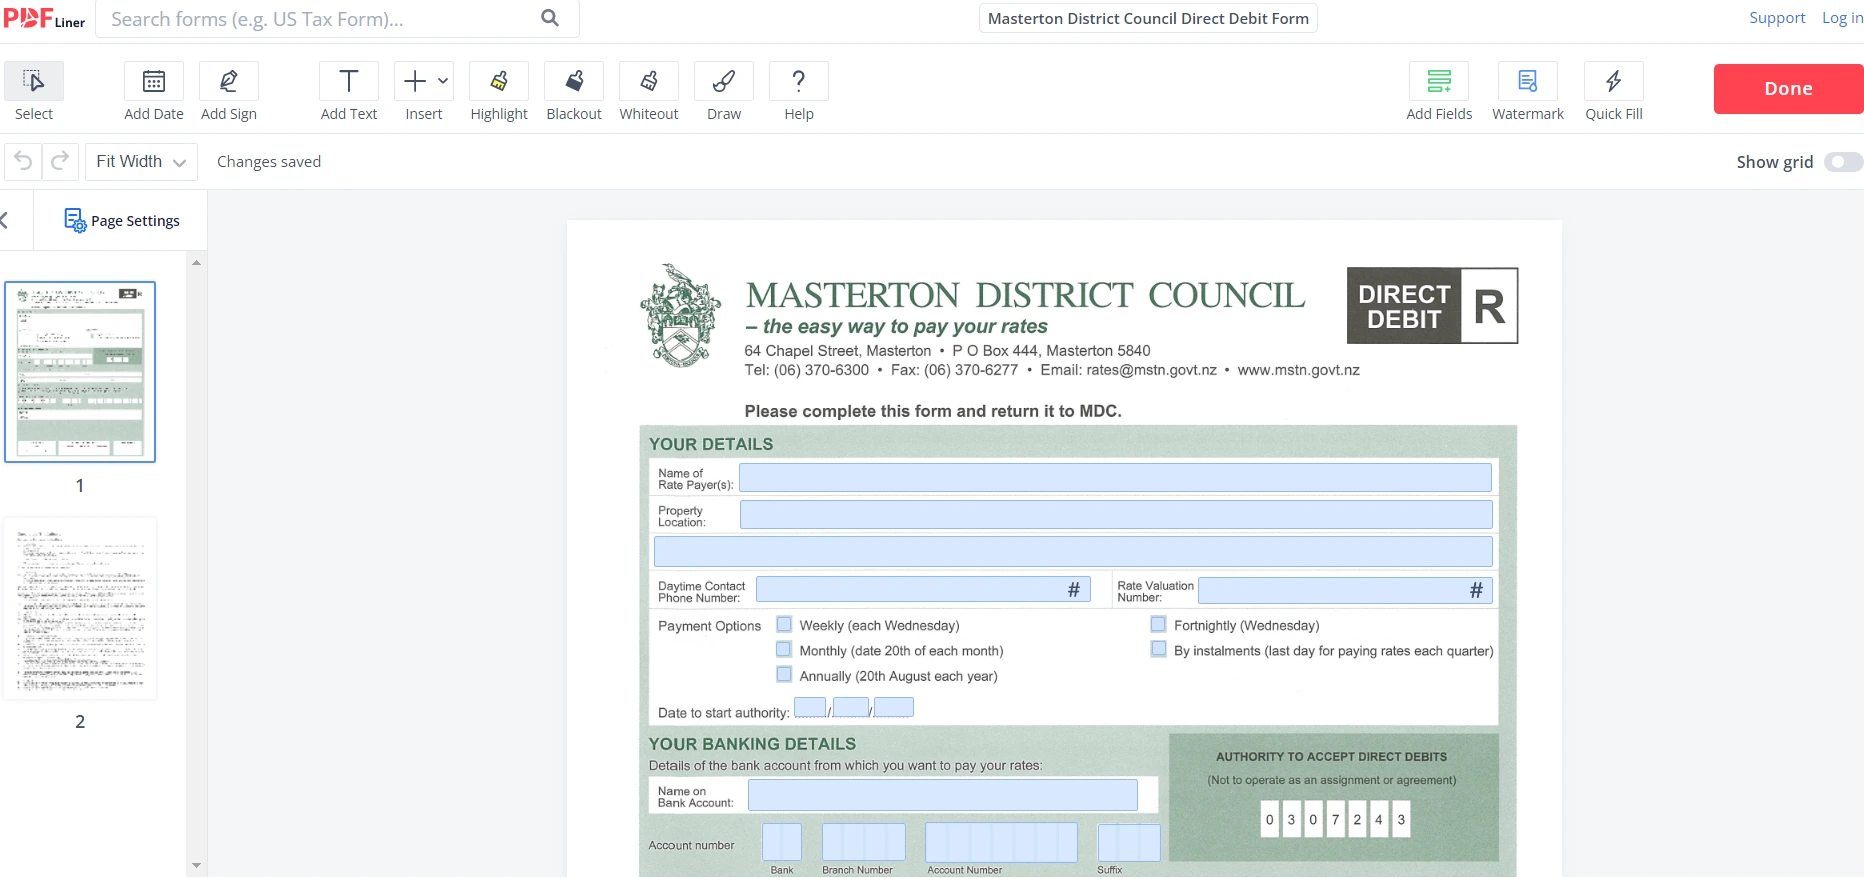 Masterton District Council Direct Debit Form on PDFLiner